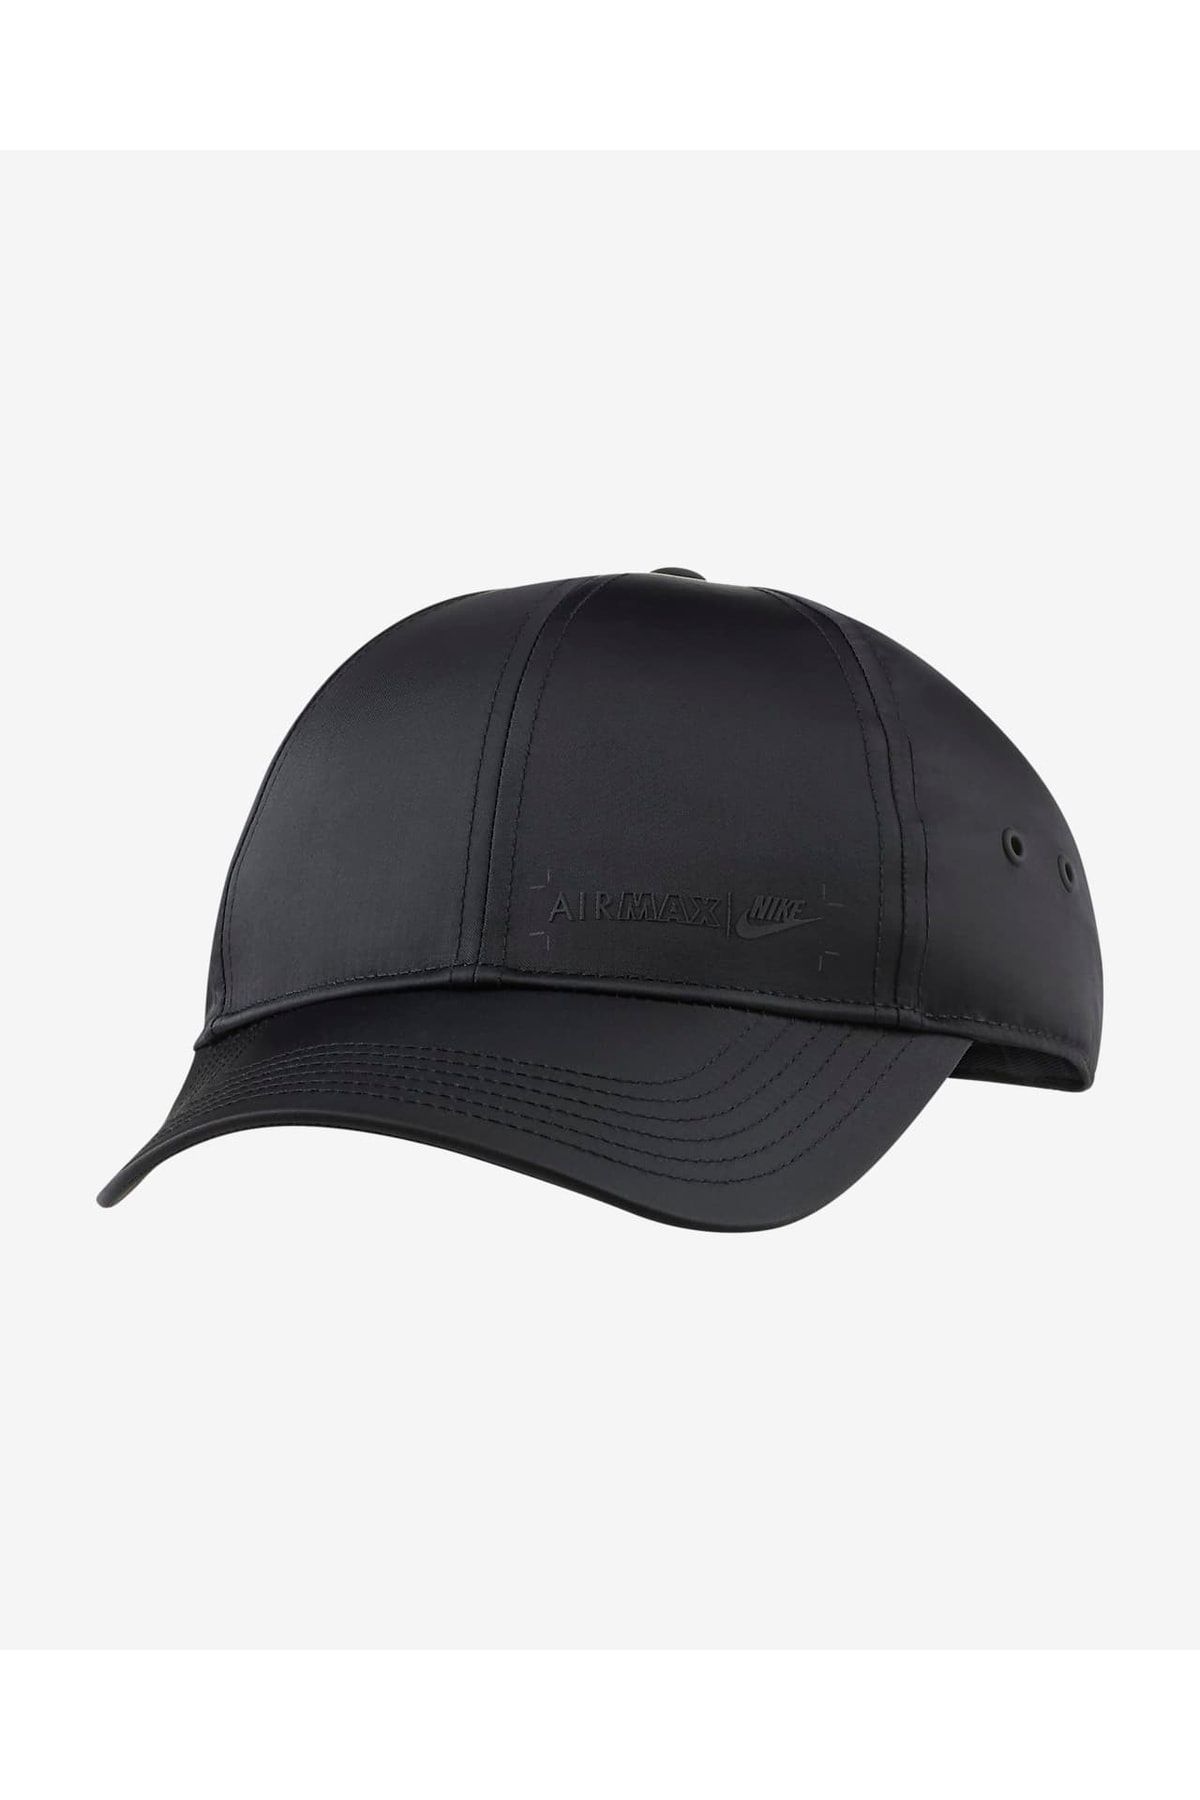 Nike Air Max Legacy91 Kids' Adjustable Hat - Black